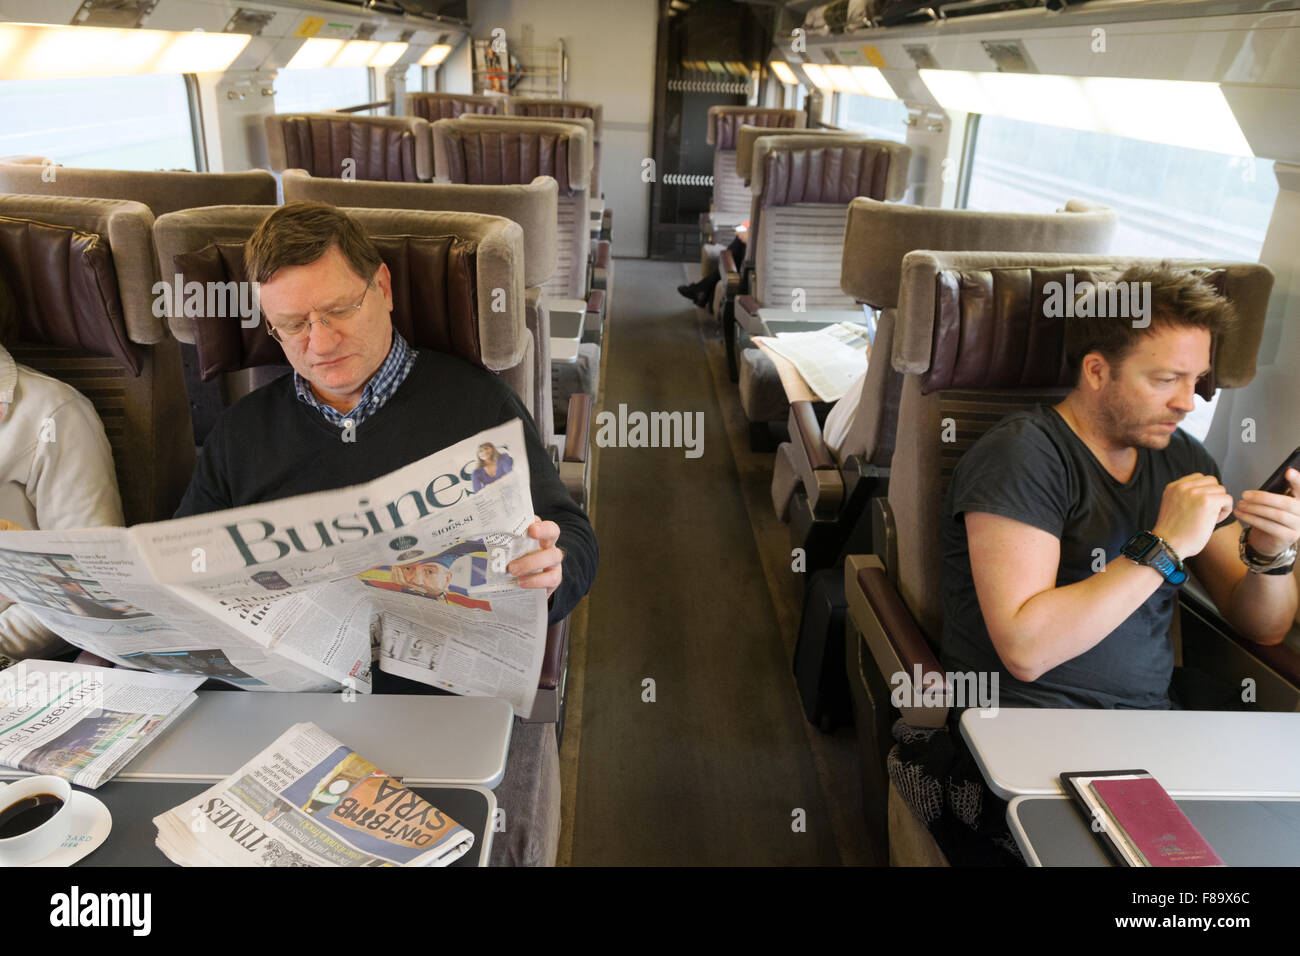 Les hommes d'affaires voyageant dans un train, le service Eurostar St Pancras à Paris Banque D'Images